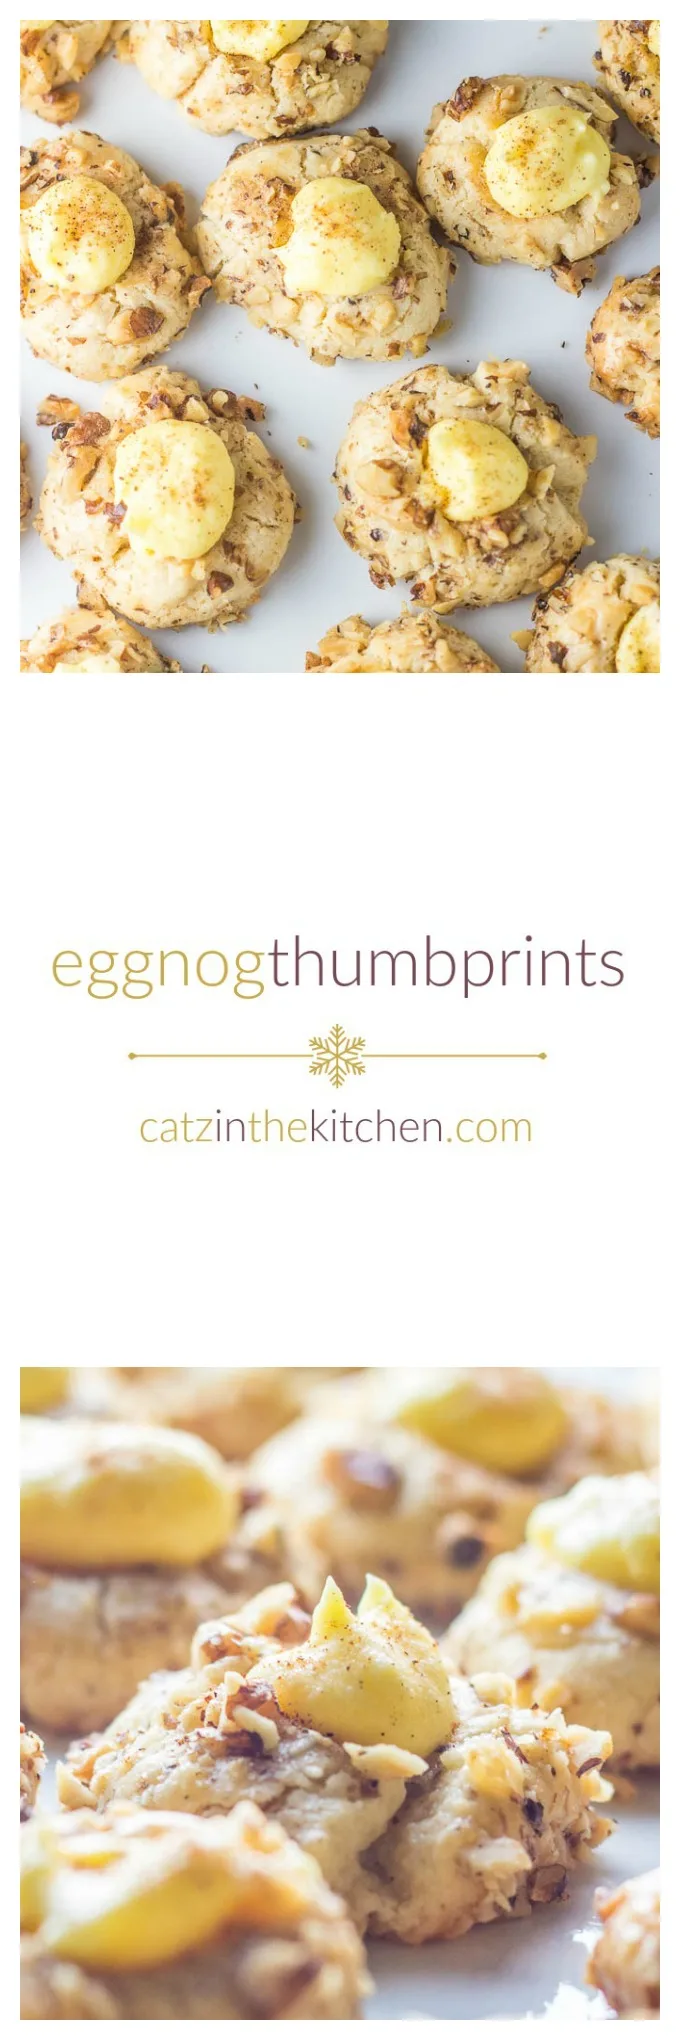 Eggnog Thumbprints | Catz in the Kitchen | catzinthekitchen.com | #cookies #eggnog #Christmas